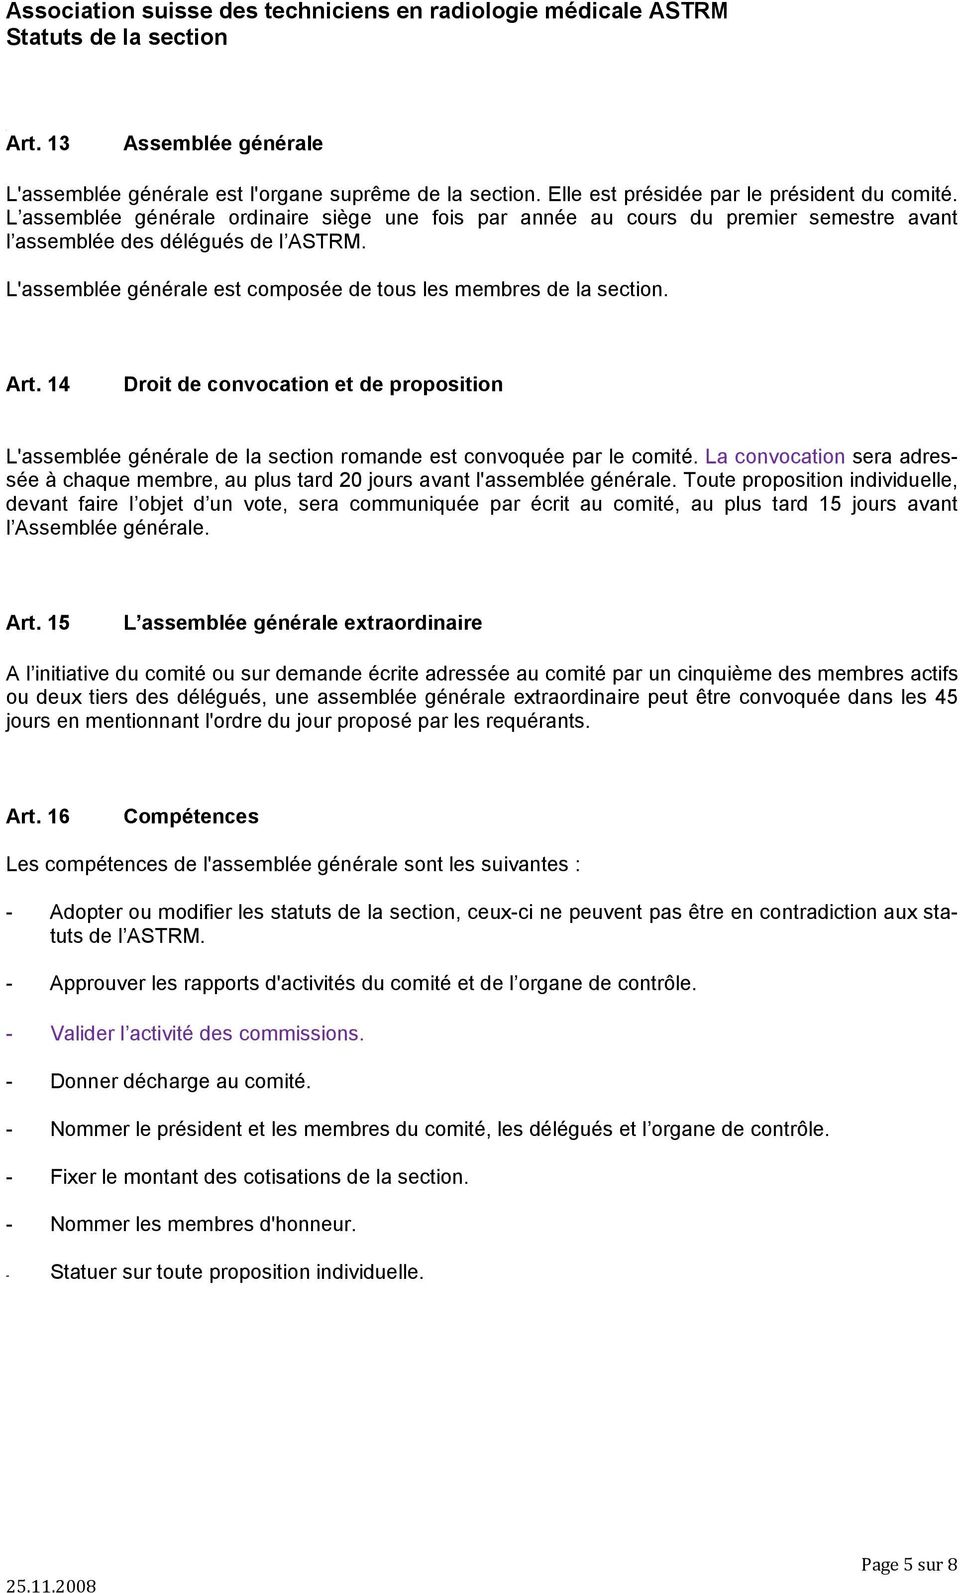 Art. 14 Droit de convocation et de proposition L'assemblée générale de la section romande est convoquée par le comité.